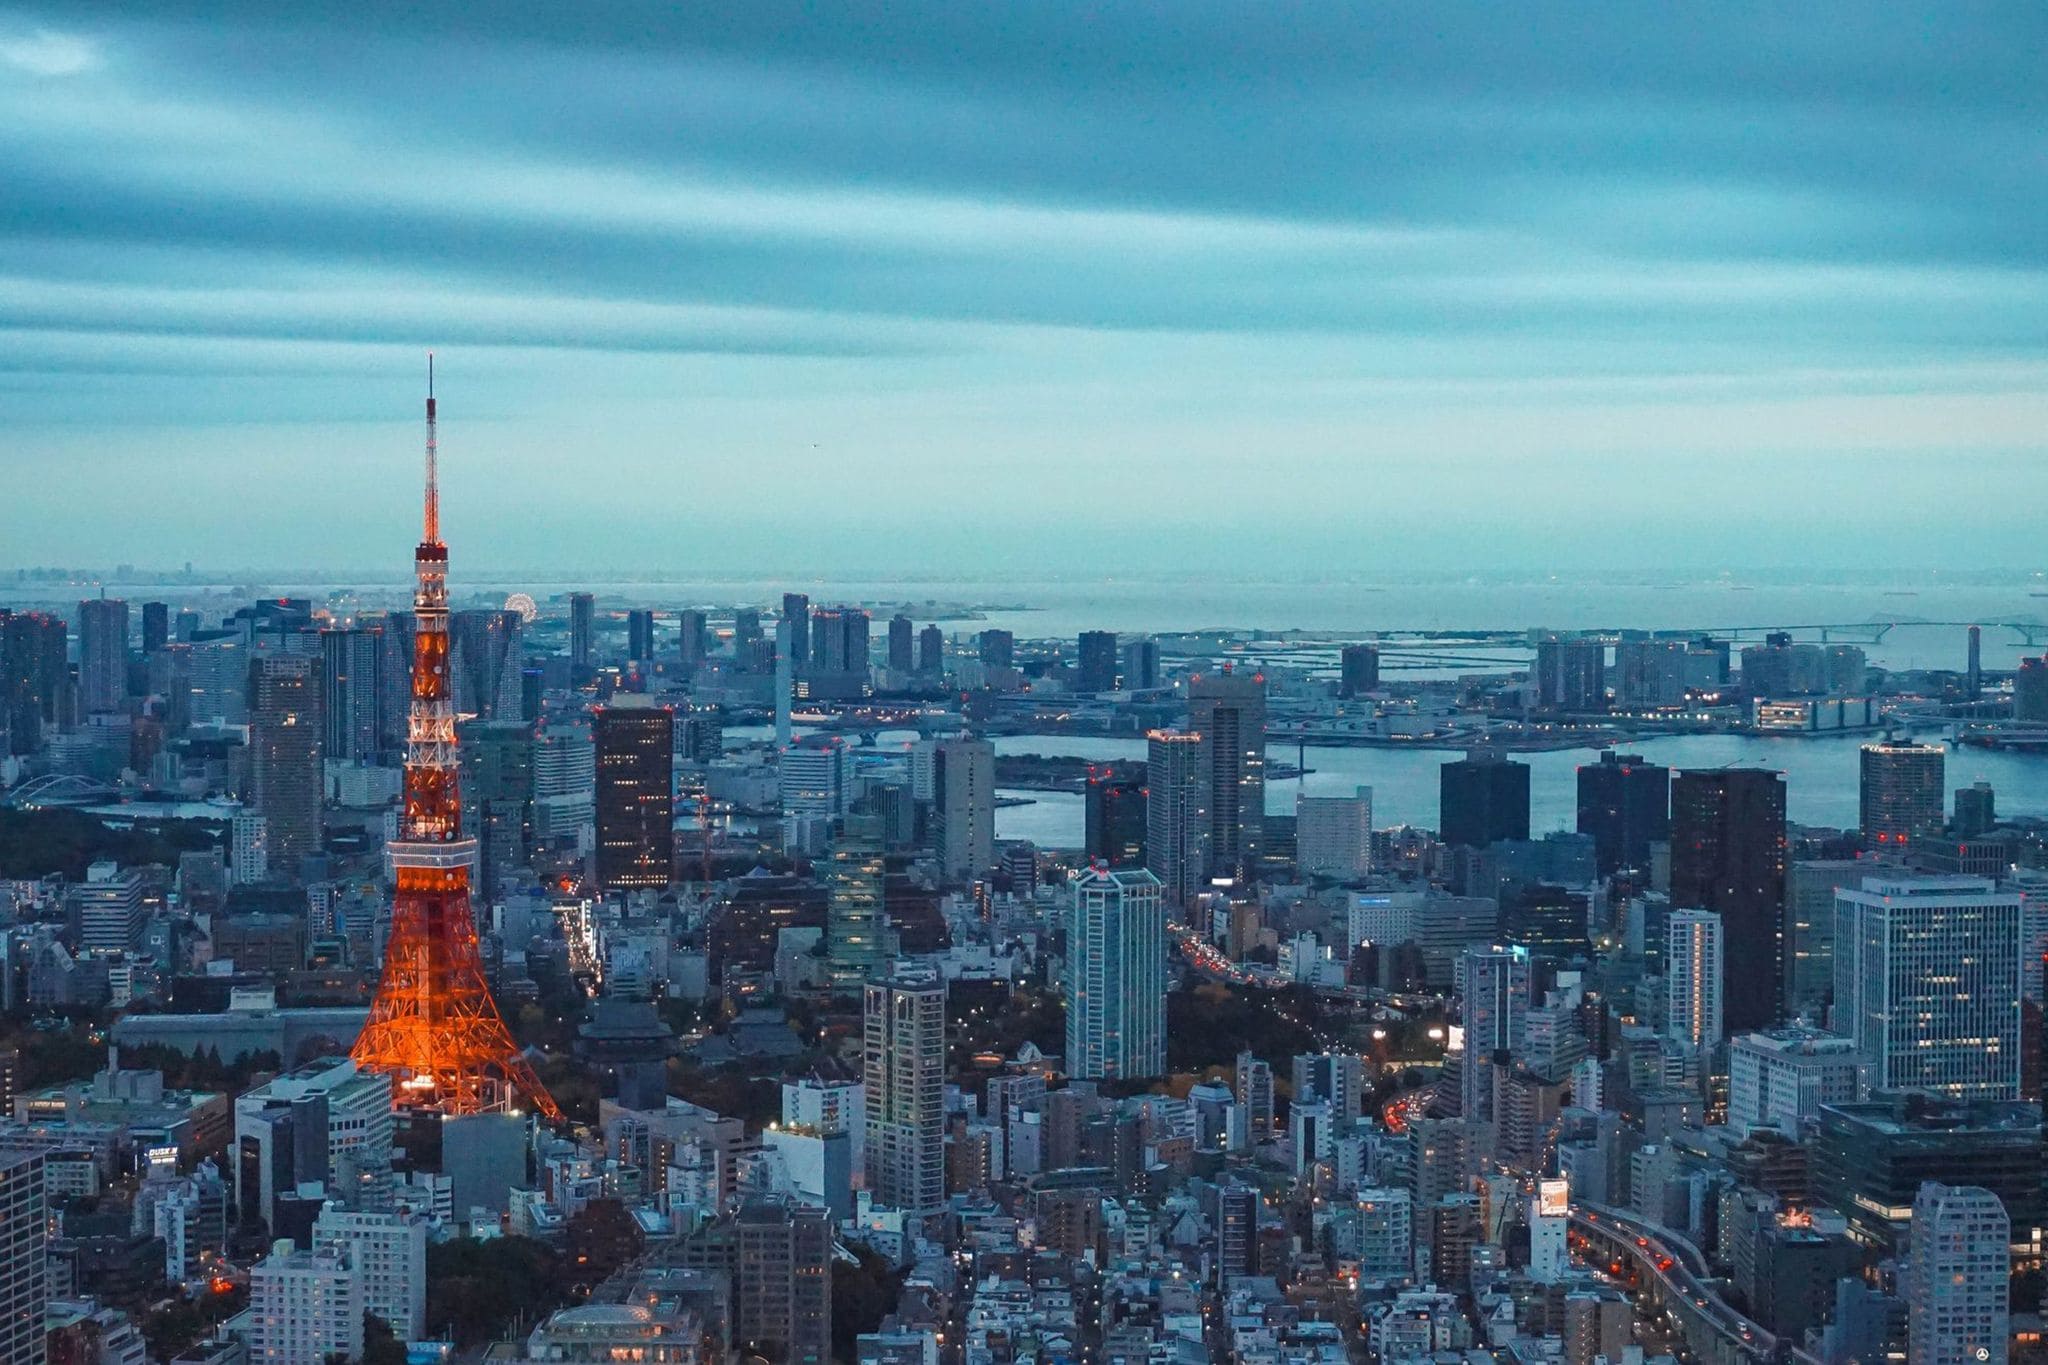 टोक्यो टॉवर और जापान में अन्य अवश्य घूमने योग्य स्थान | वीणा विश्व